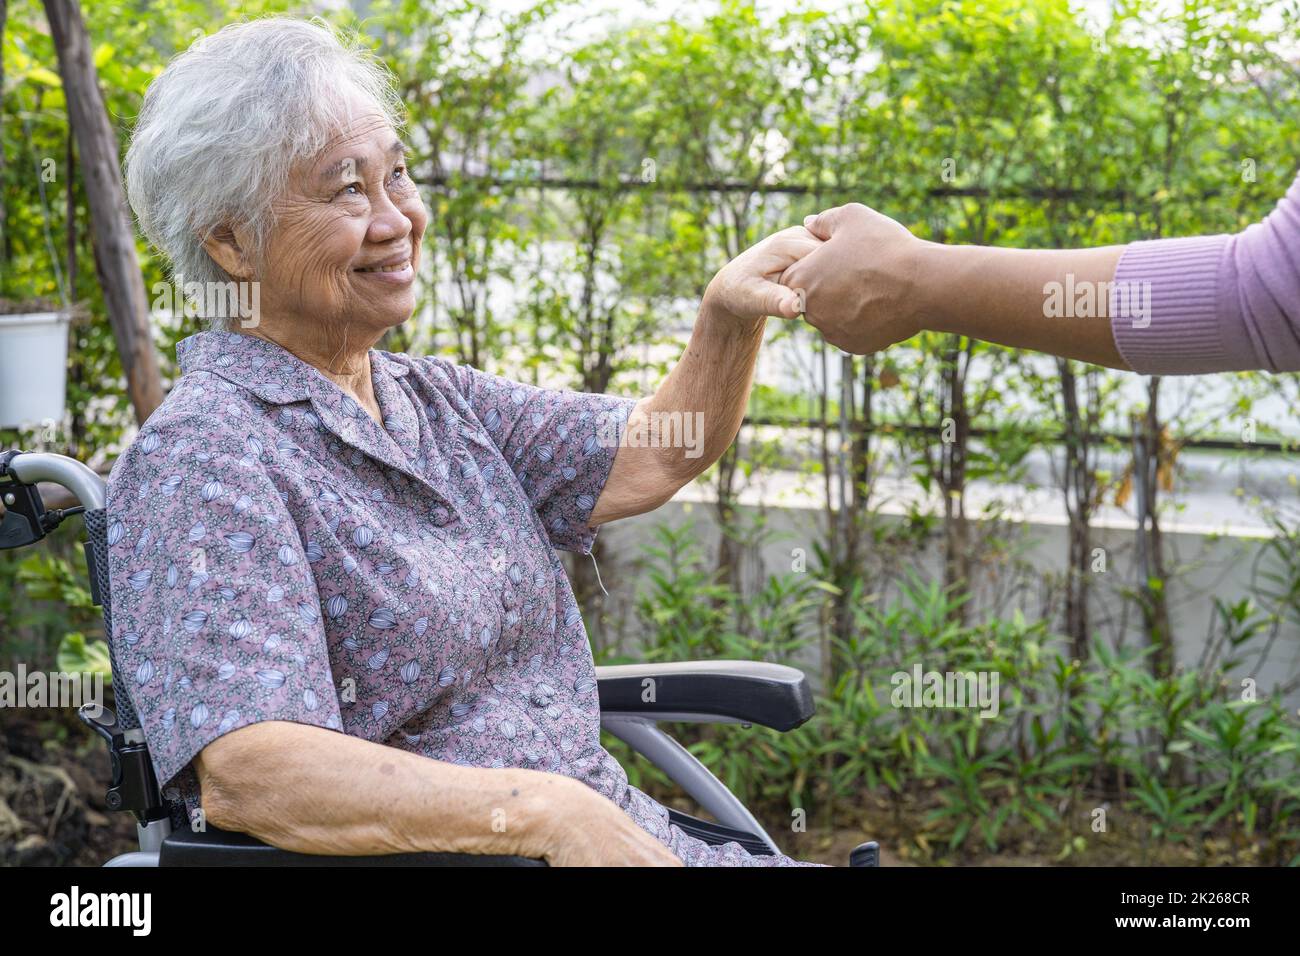 Hände halten Asian Senior oder ältere alte Dame Frau Patientin mit Liebe, Pflege, ermutigen und Einfühlungsvermögen im Park. Stockfoto